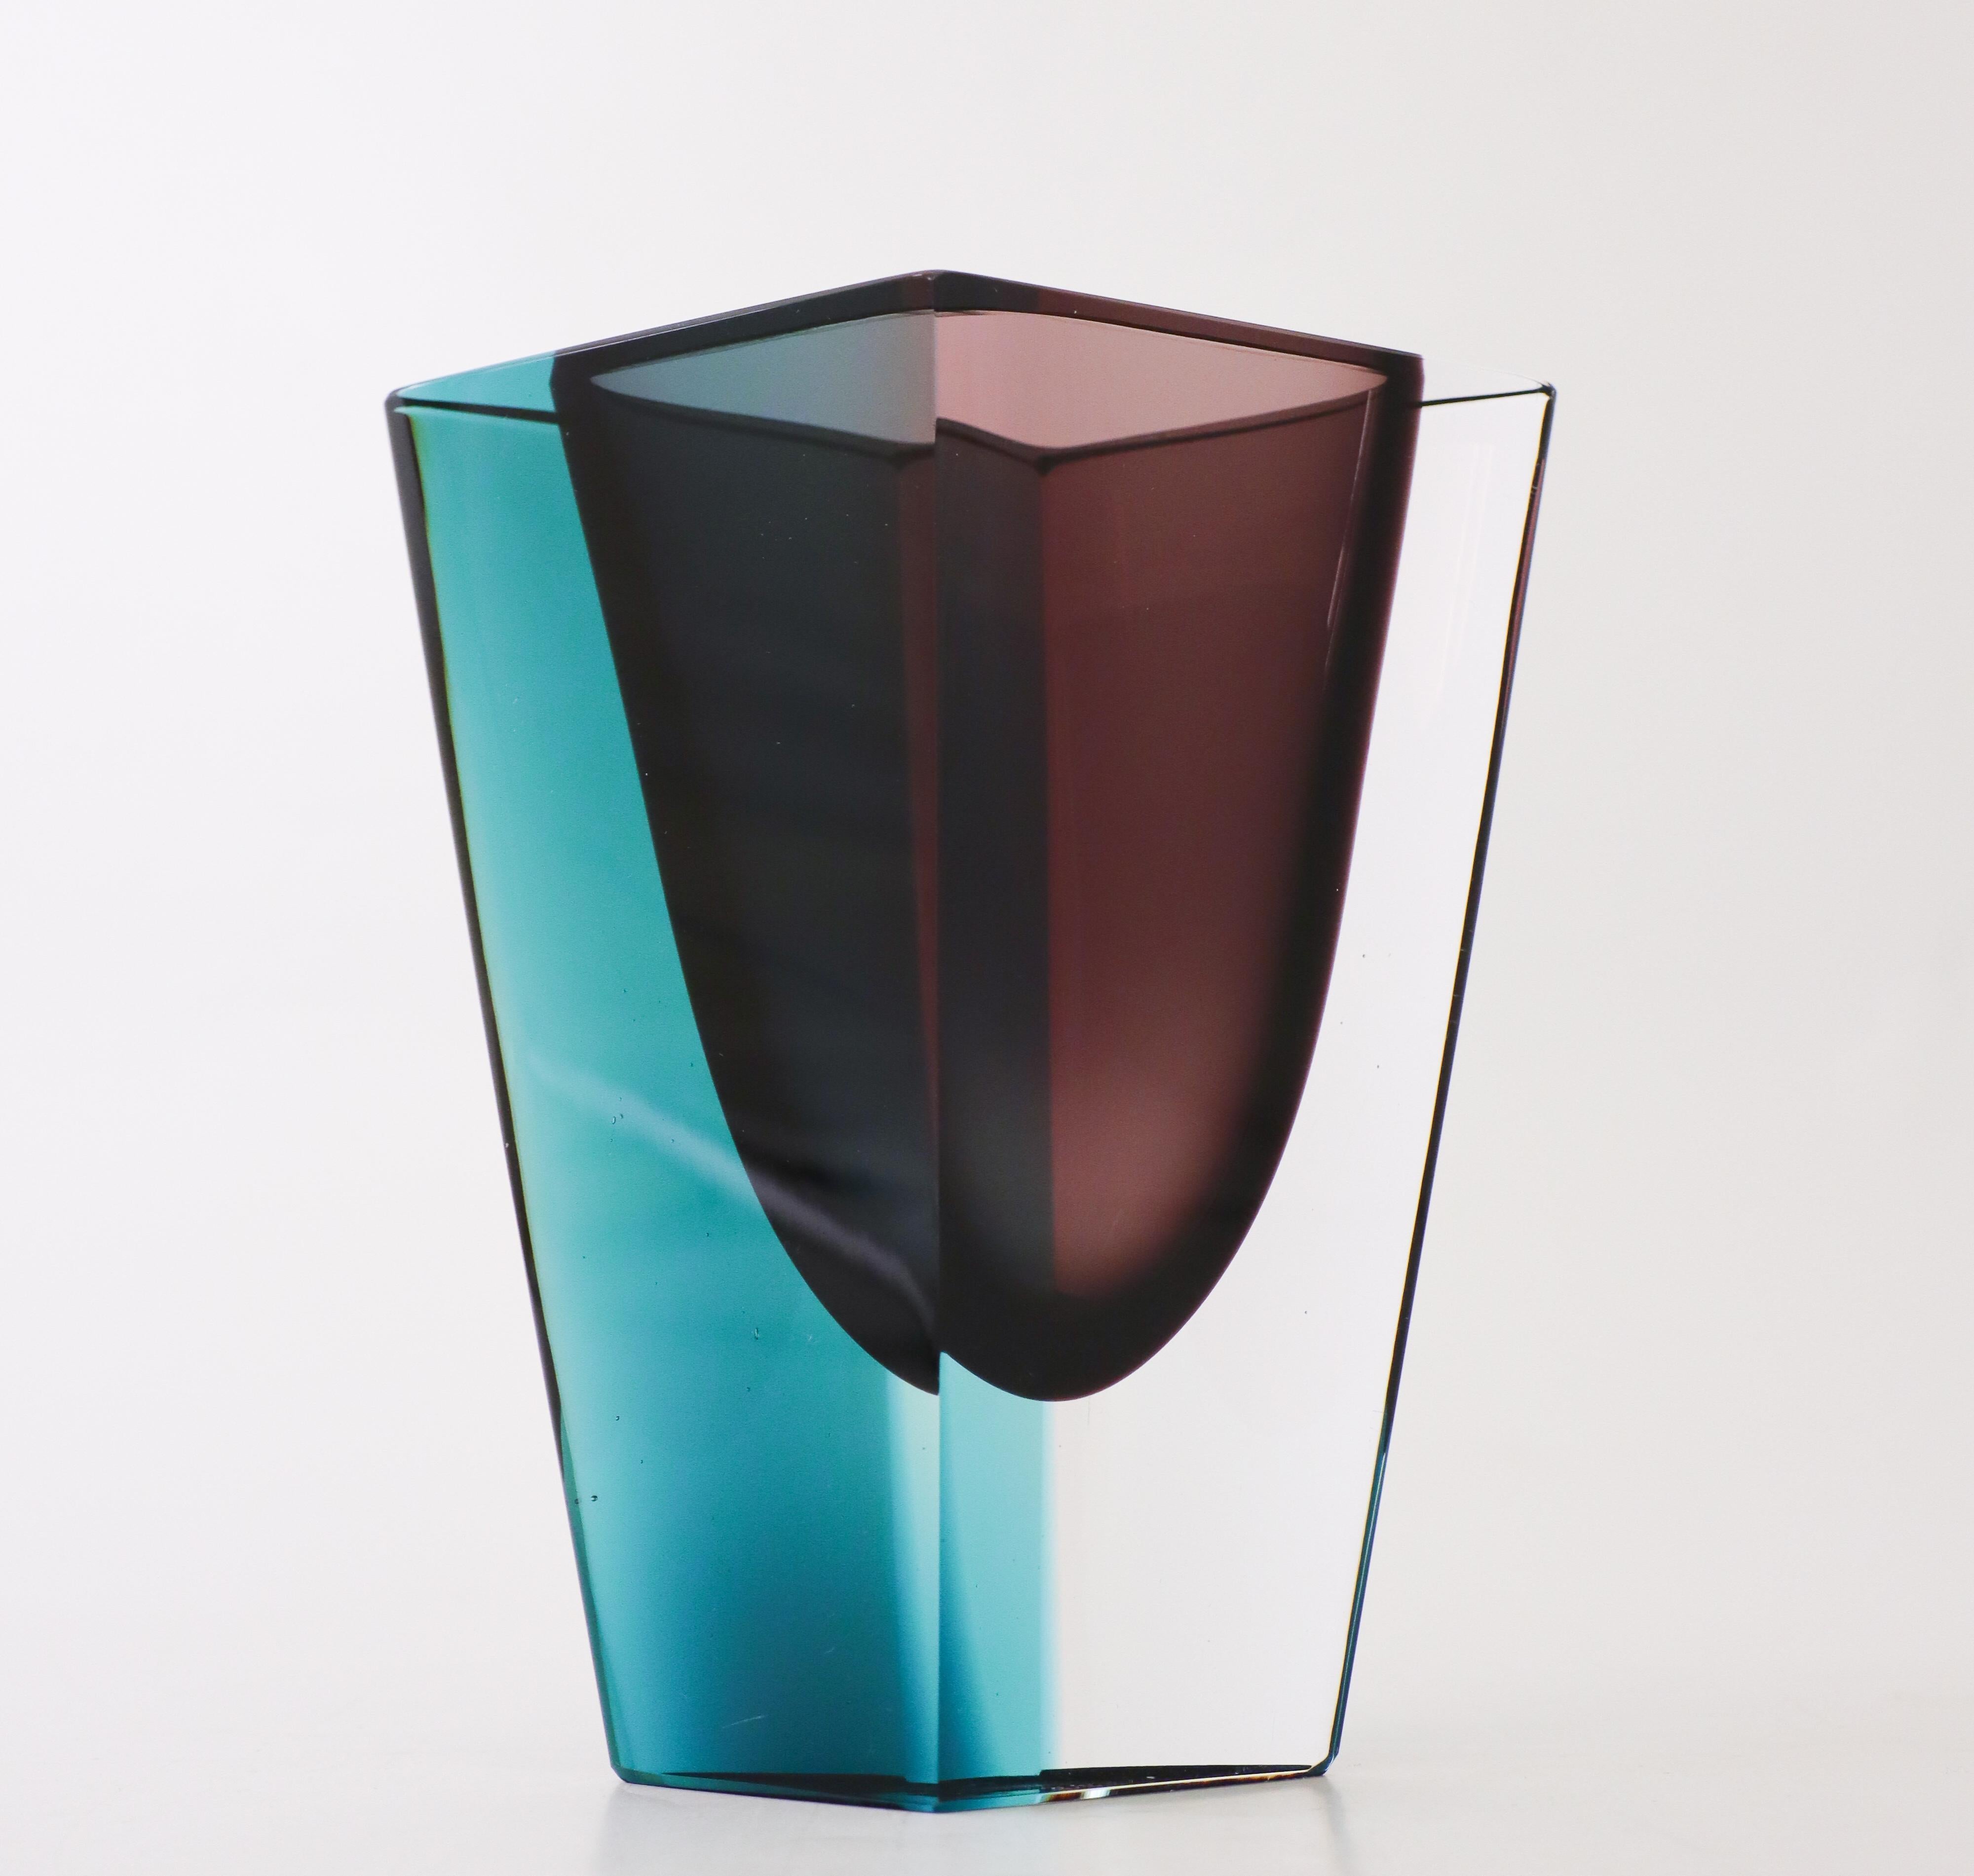 A lovely prisma vase in glass designed by Kaj Franck at Nuutajärvi Notsjö in Finland in 1960. The vase is 16 cm (6.4